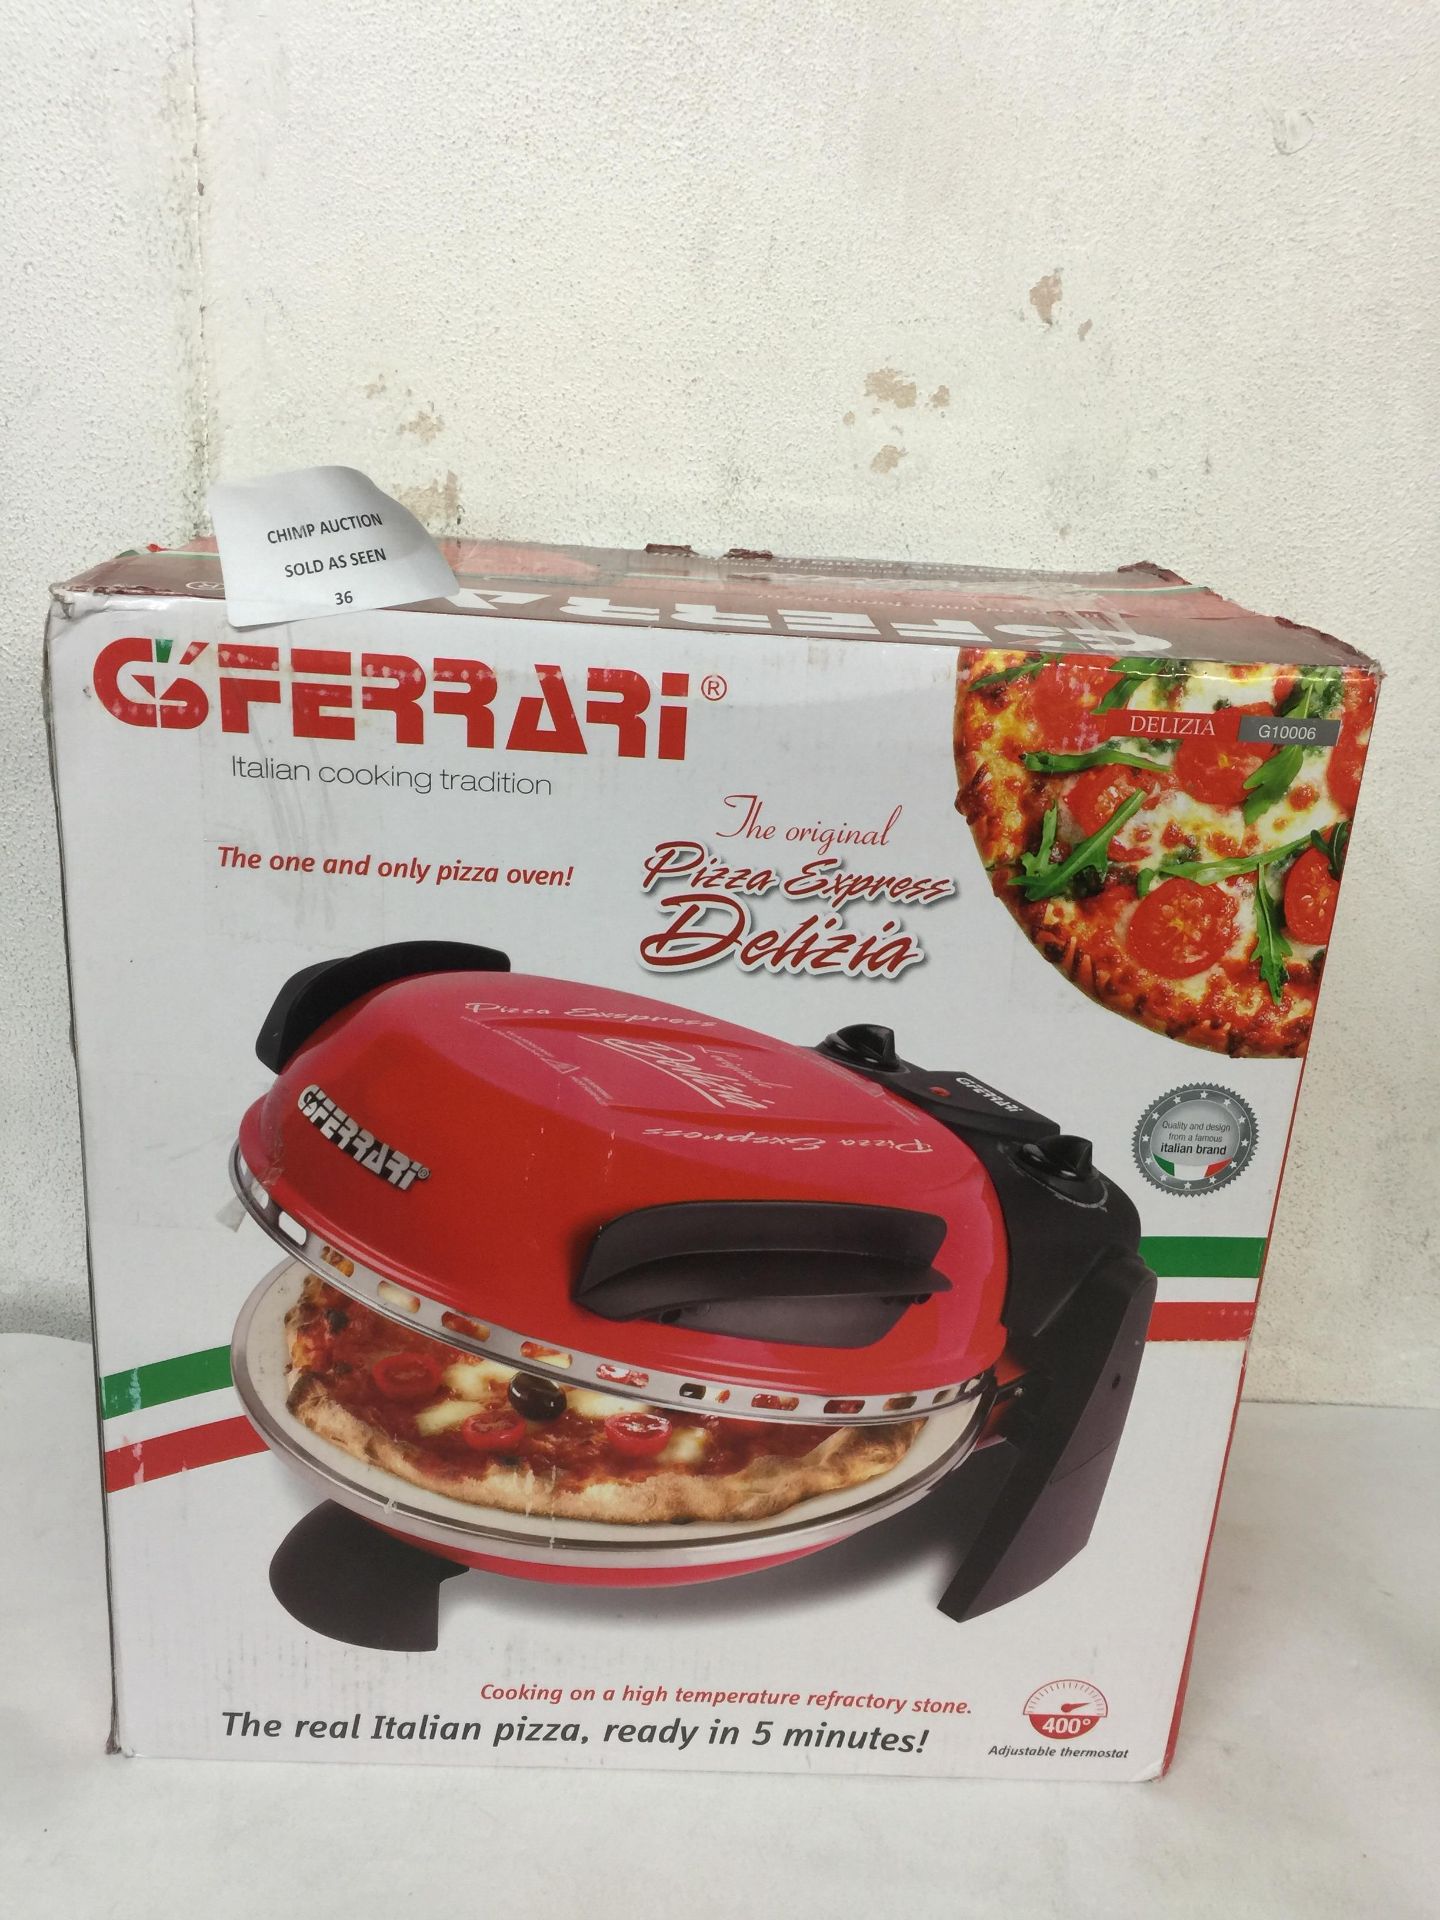 G3 Ferrari G10006 Delizia Pizza Oven - 1200W RRP £159.99